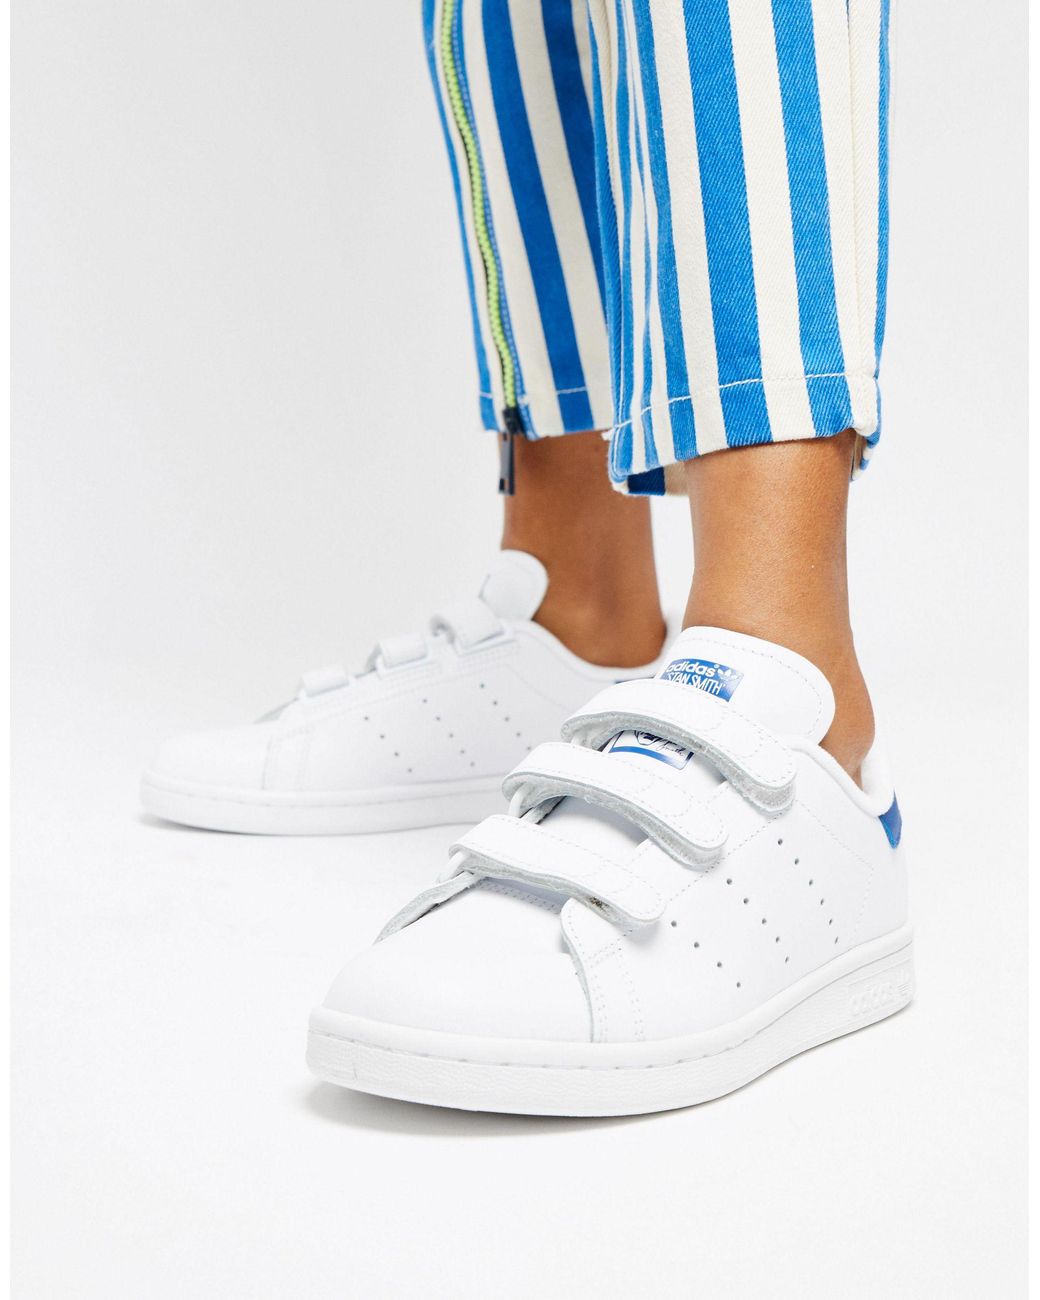 bleek sticker Schaduw adidas Originals Stan Smith - Sneakers Met Klittenband in het Wit | Lyst NL